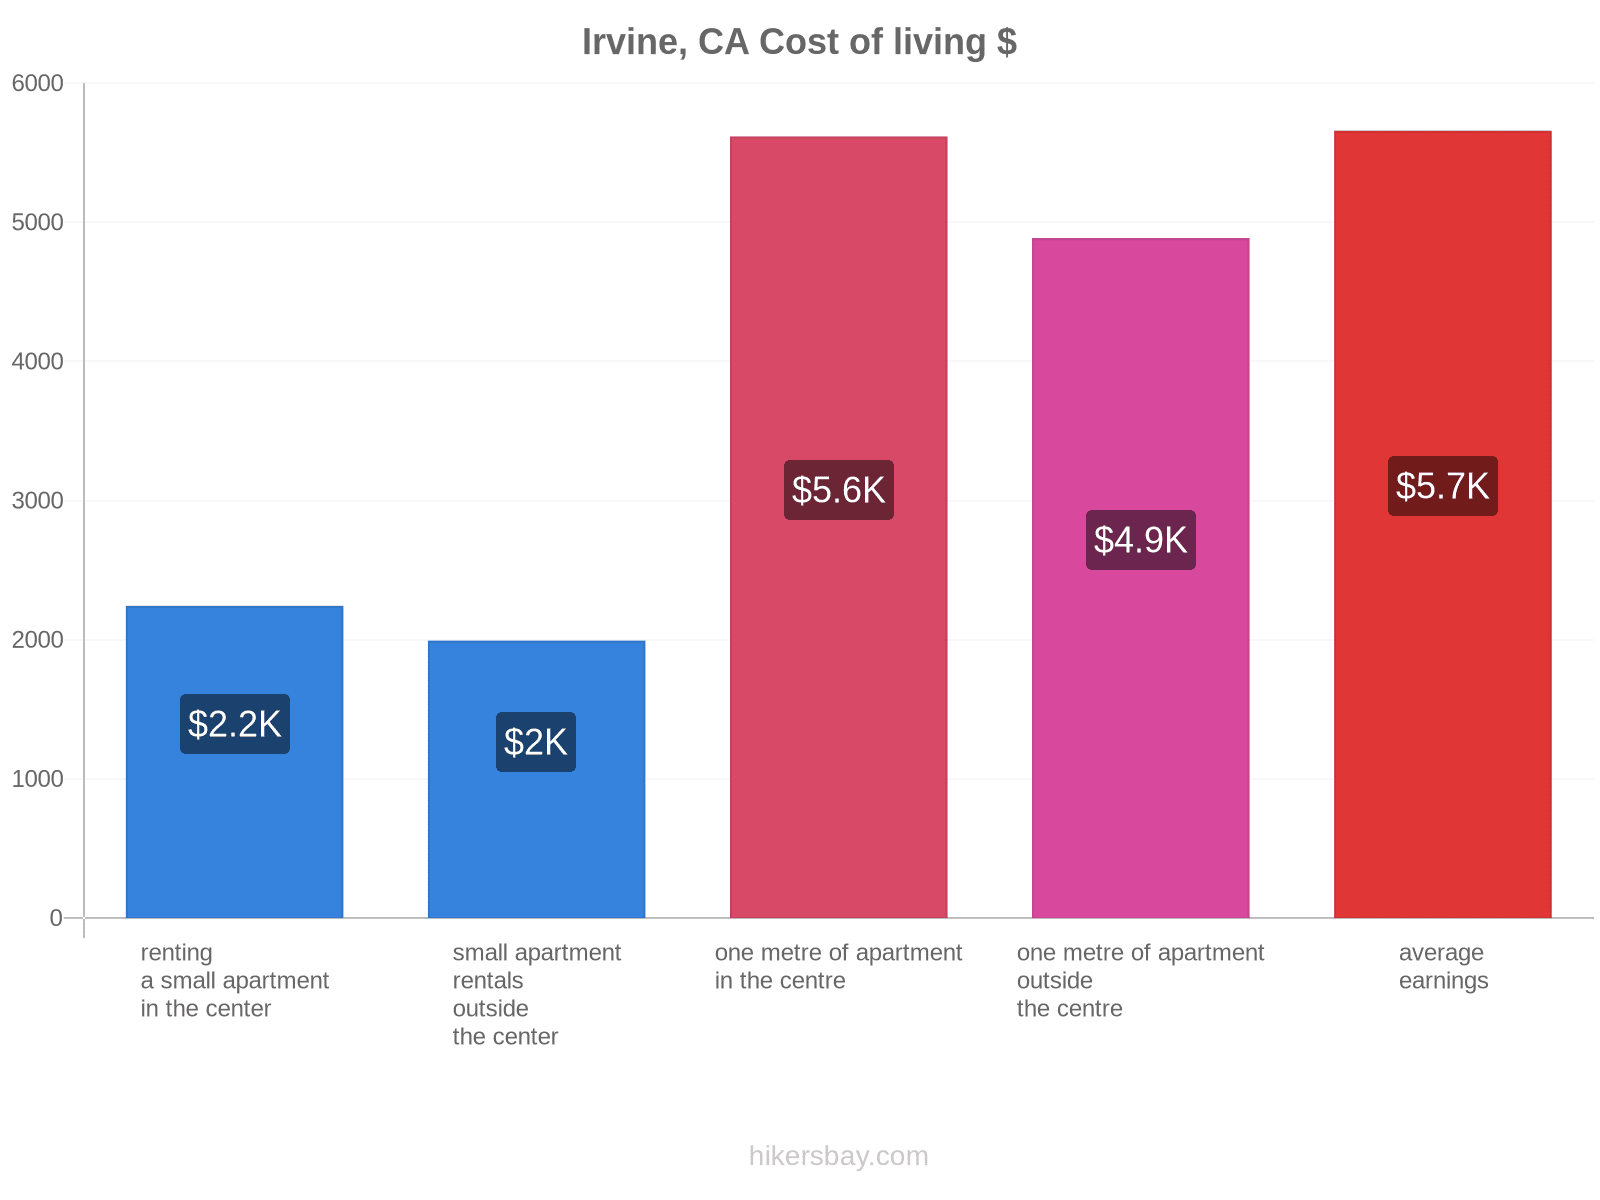 Irvine, CA cost of living hikersbay.com